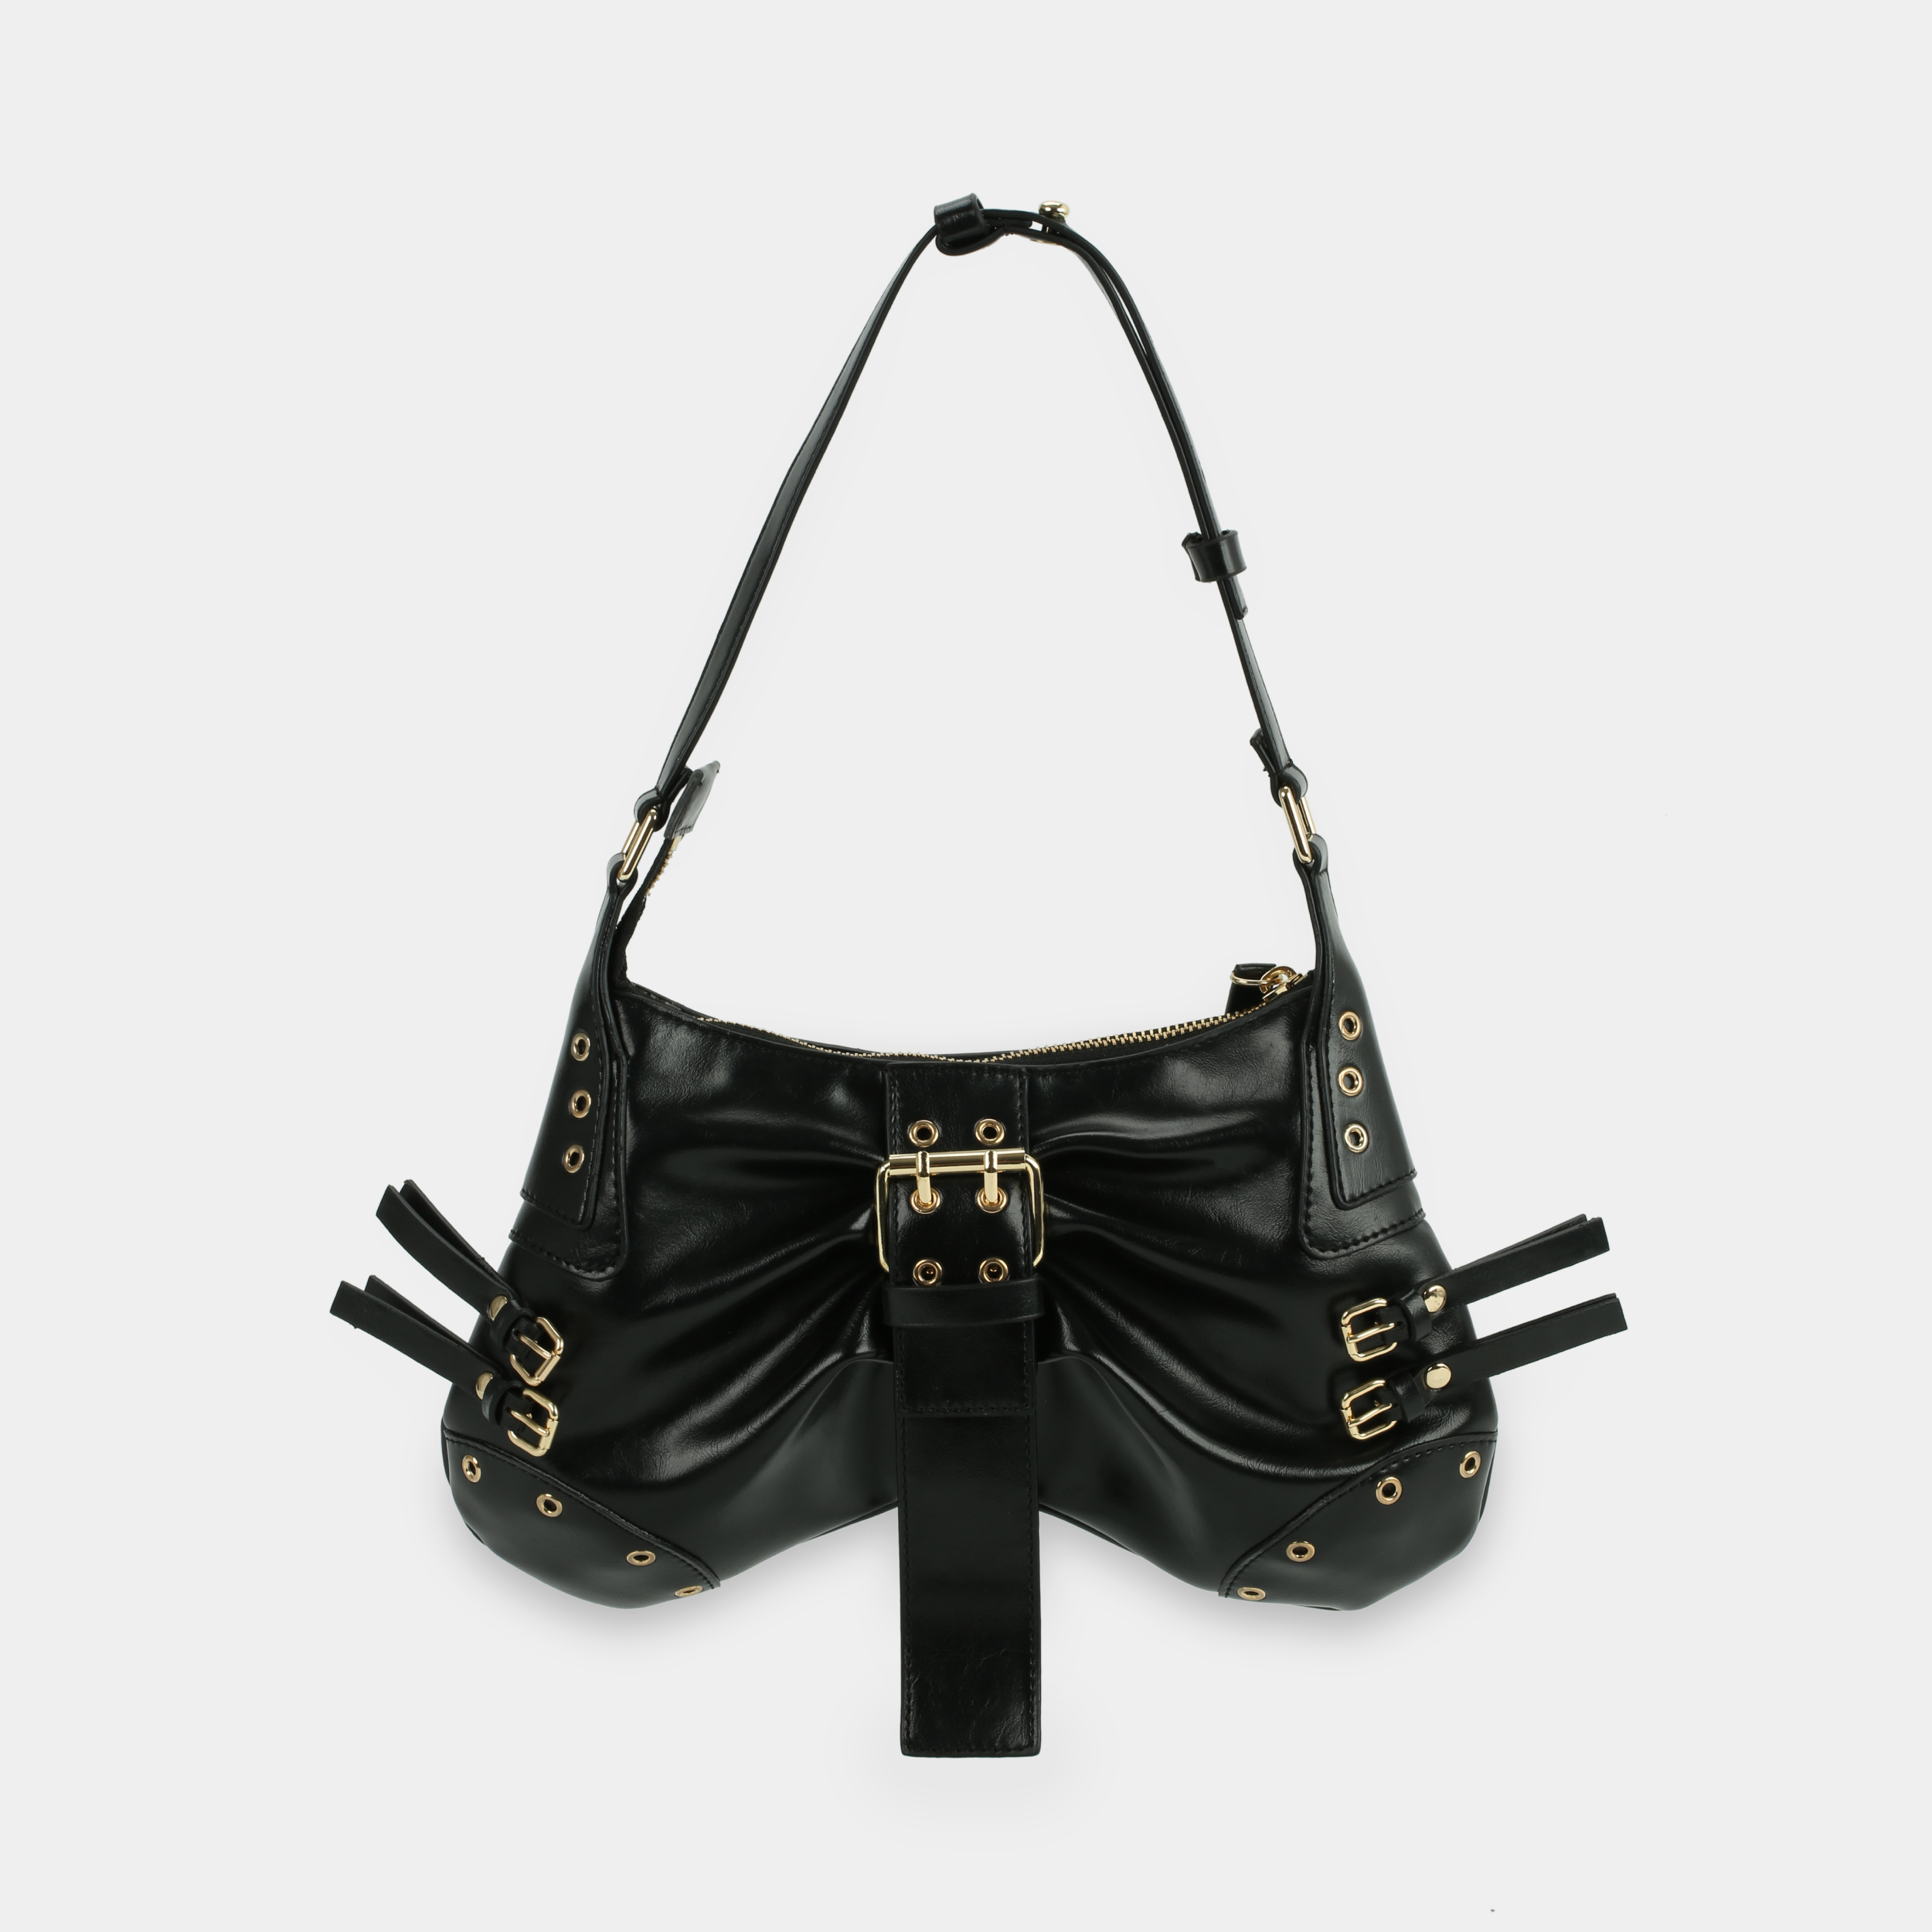 BUTTERFLY Handbag in Black